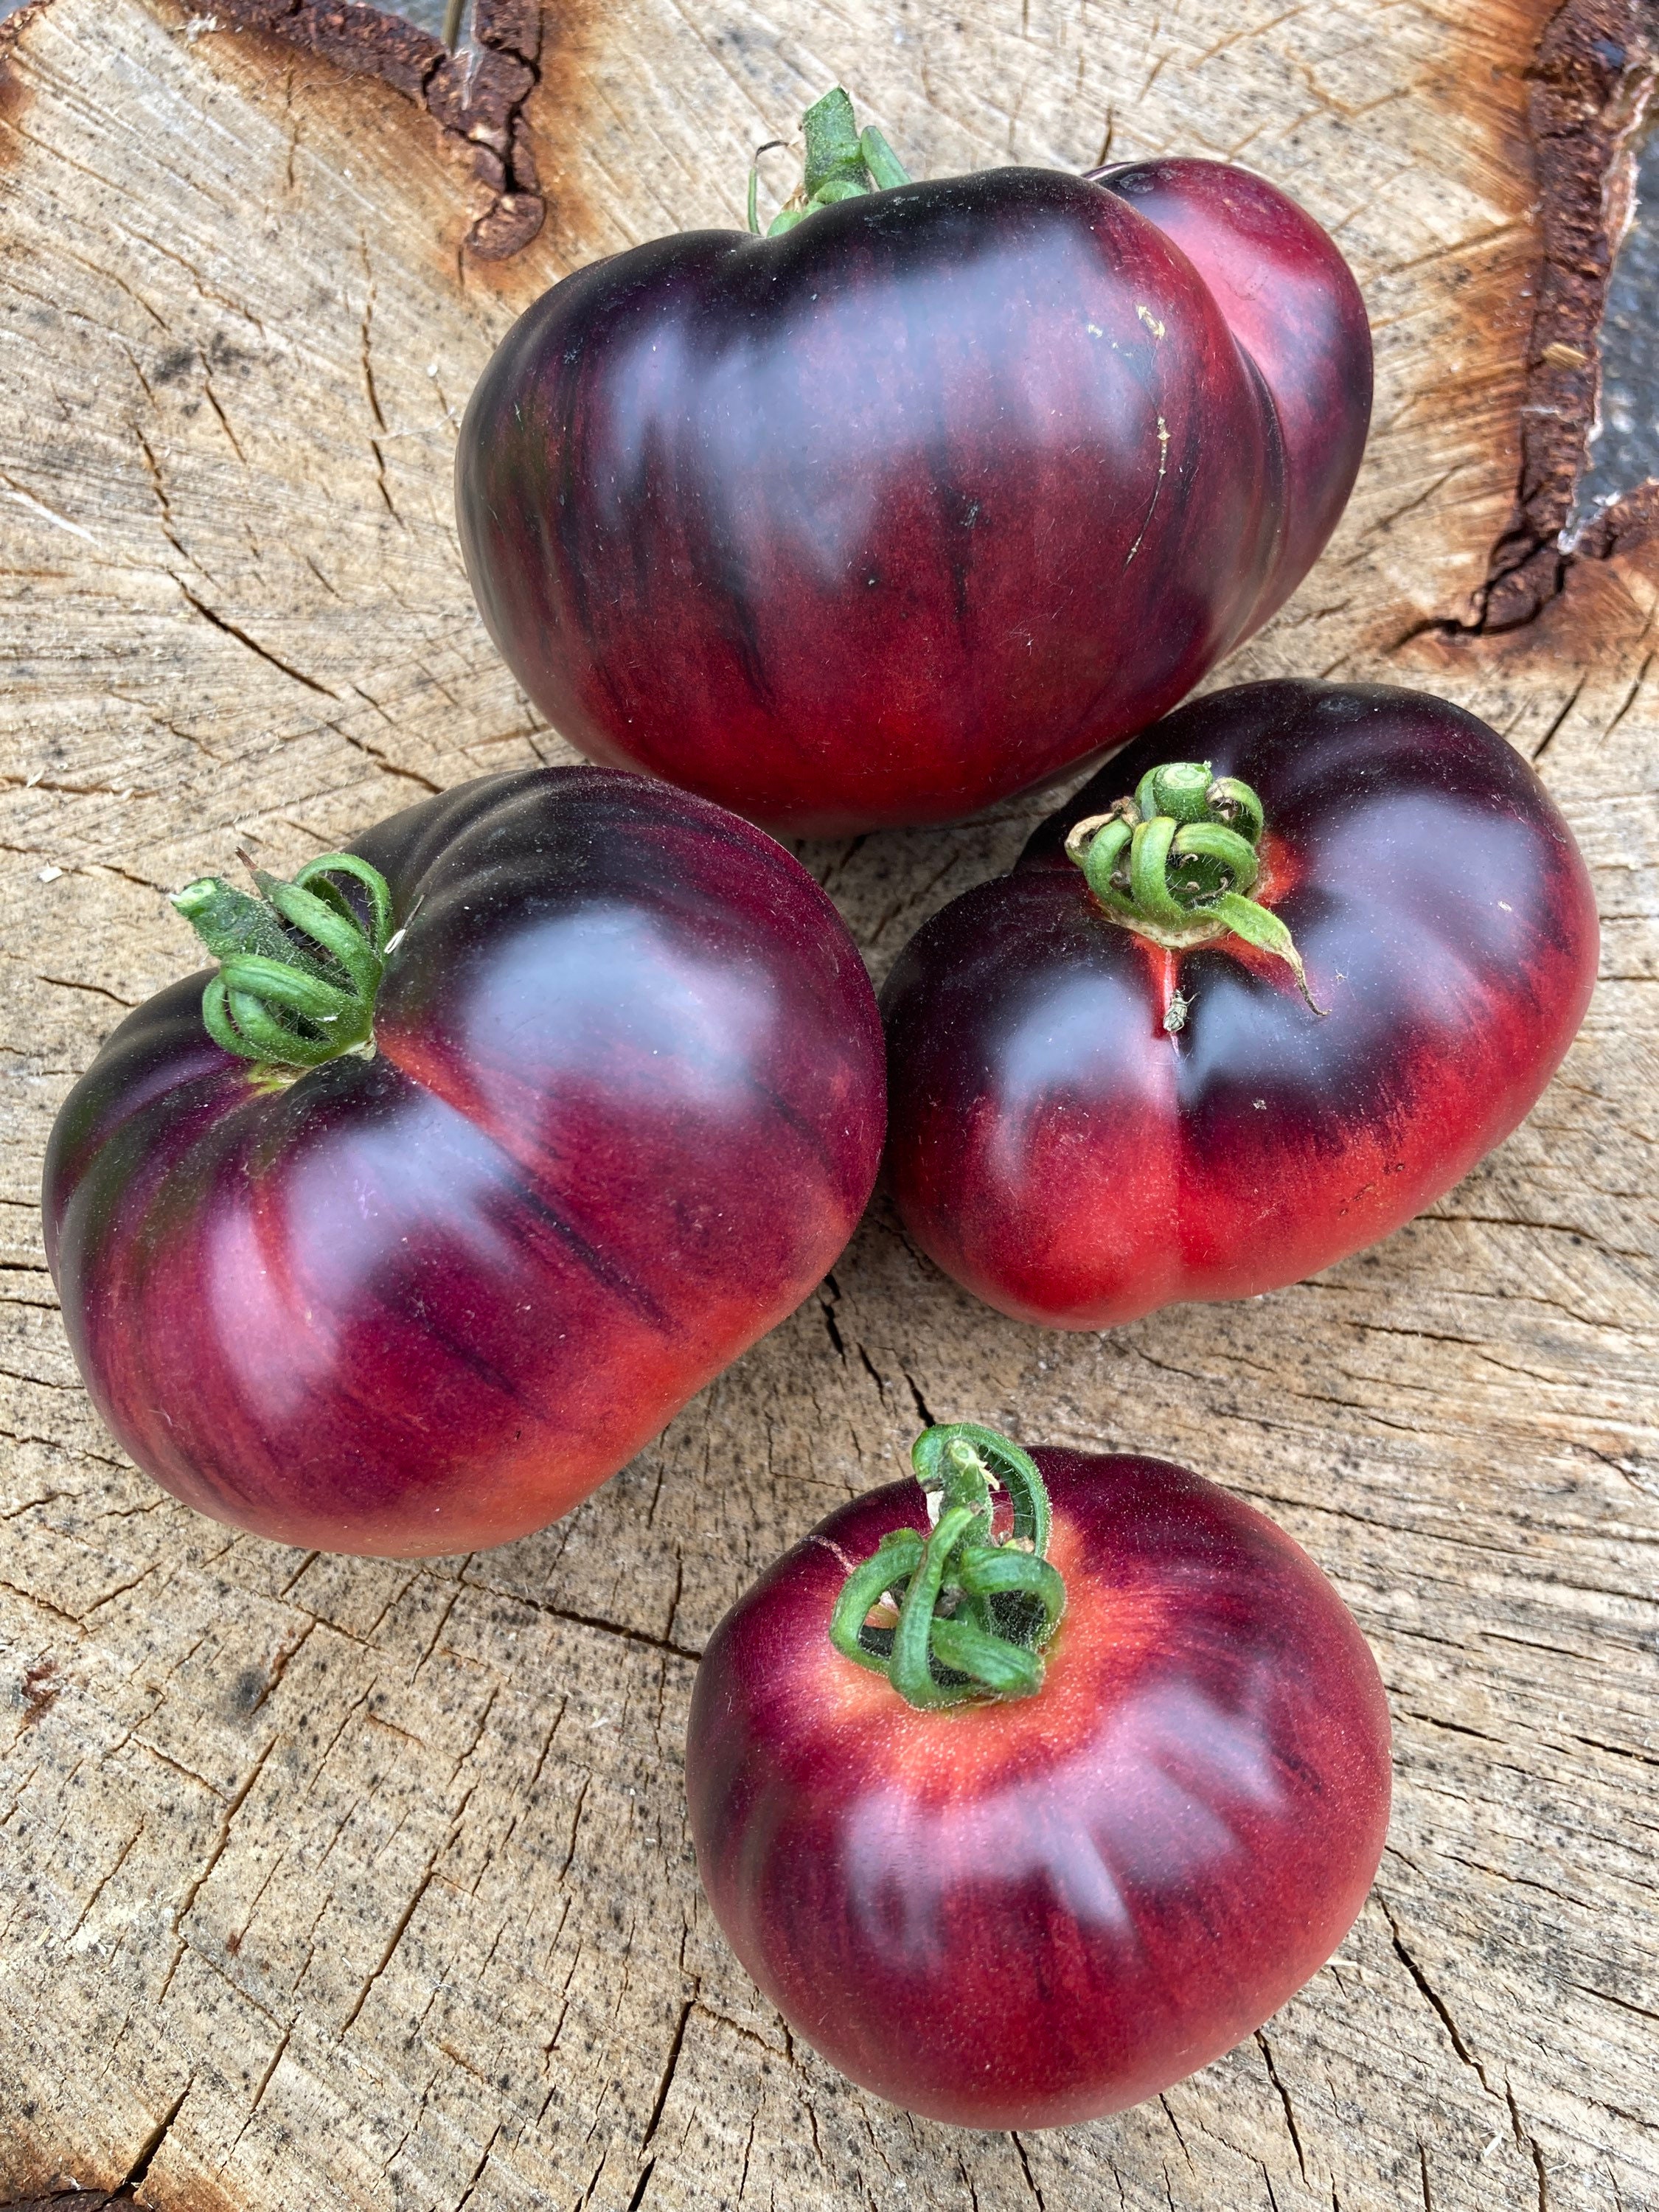 Amethyst Jewel Tomato Seeds Rare Heirloom Tomatoes image